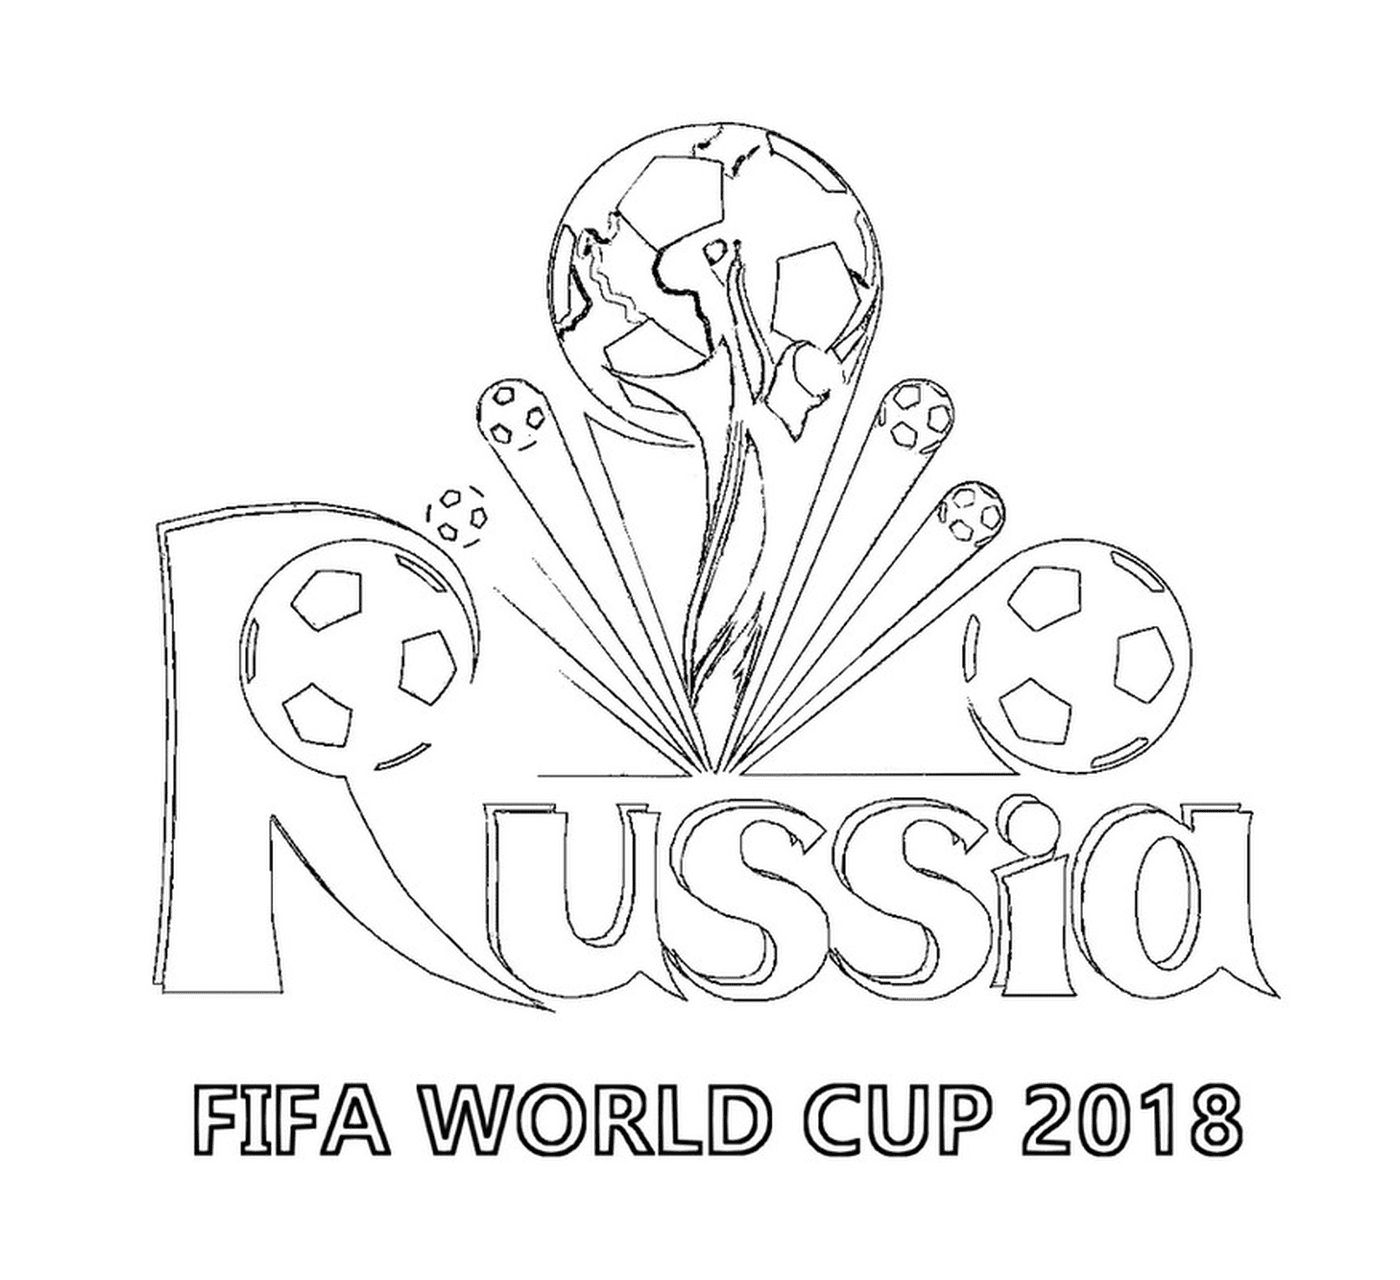  Coppa del Mondo FIFA 2018, logo 